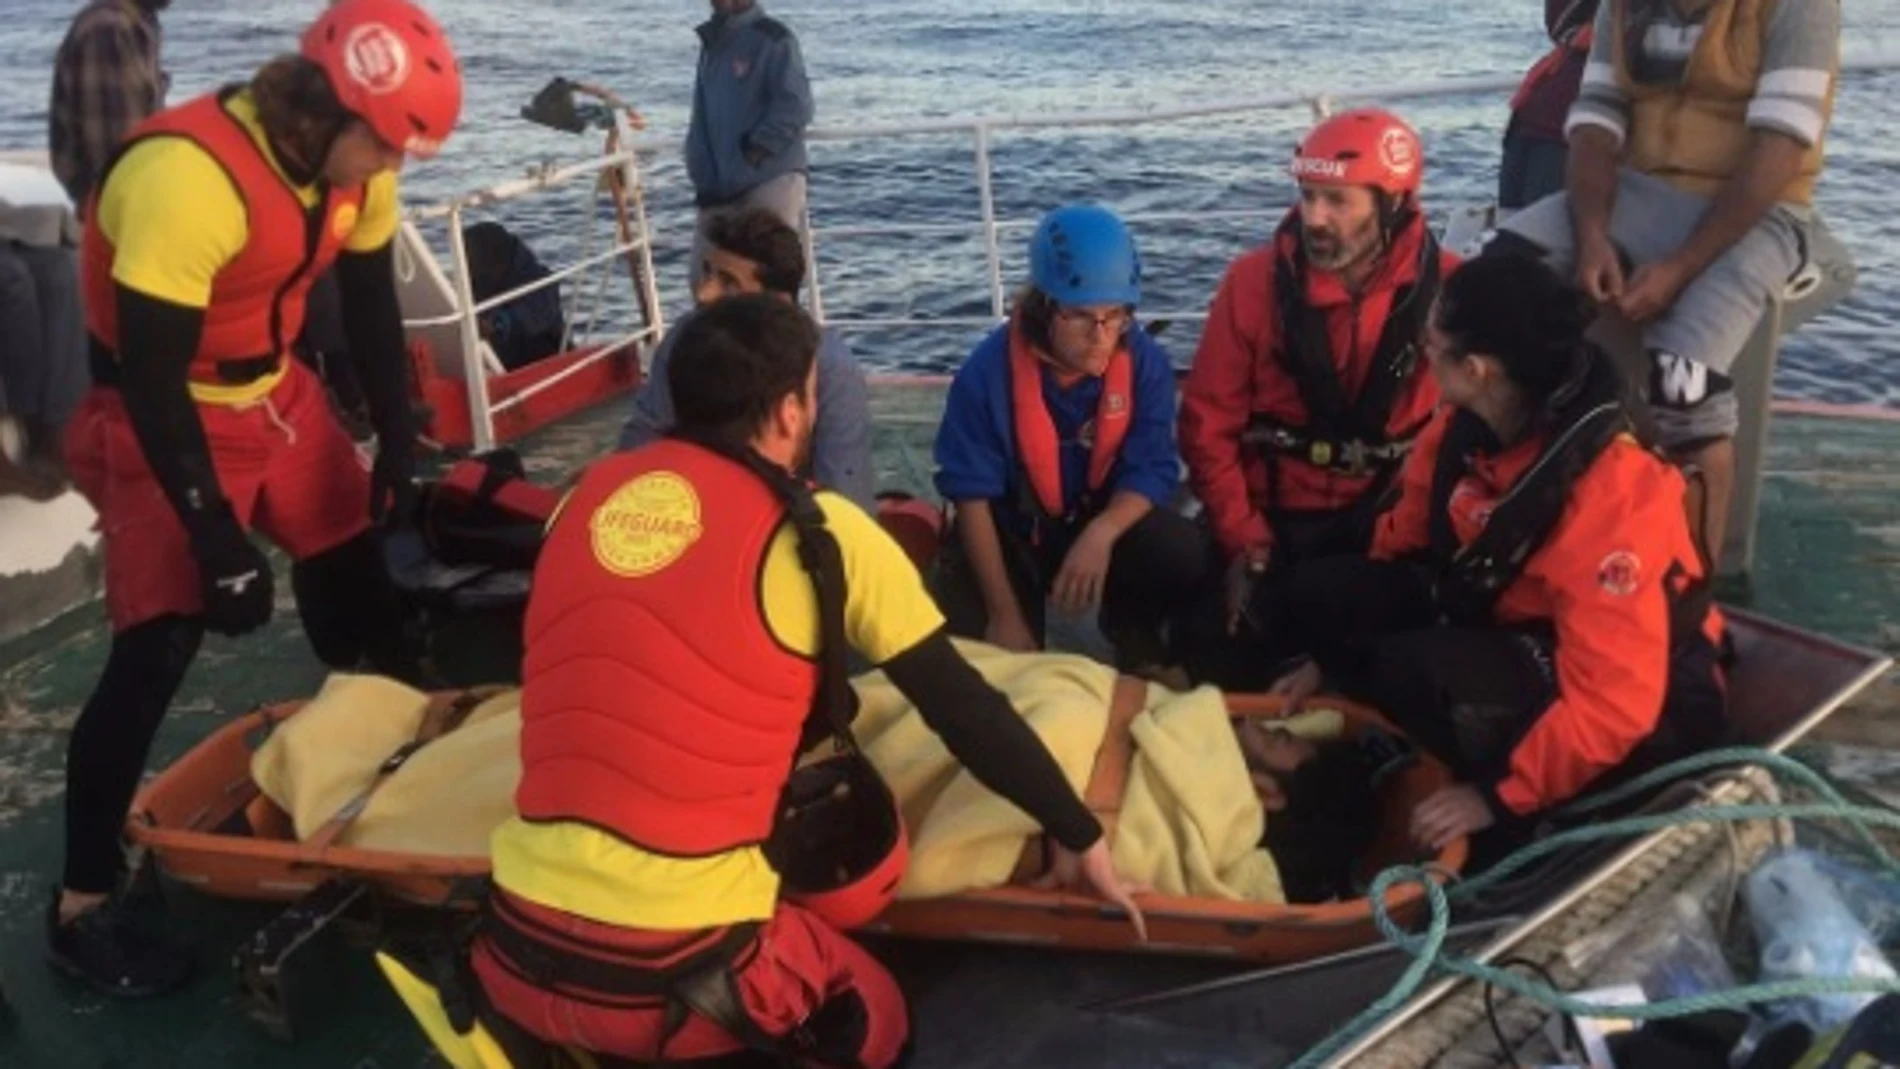 Migrante rescatado del buque 'Nuestra Señora de Loreto'